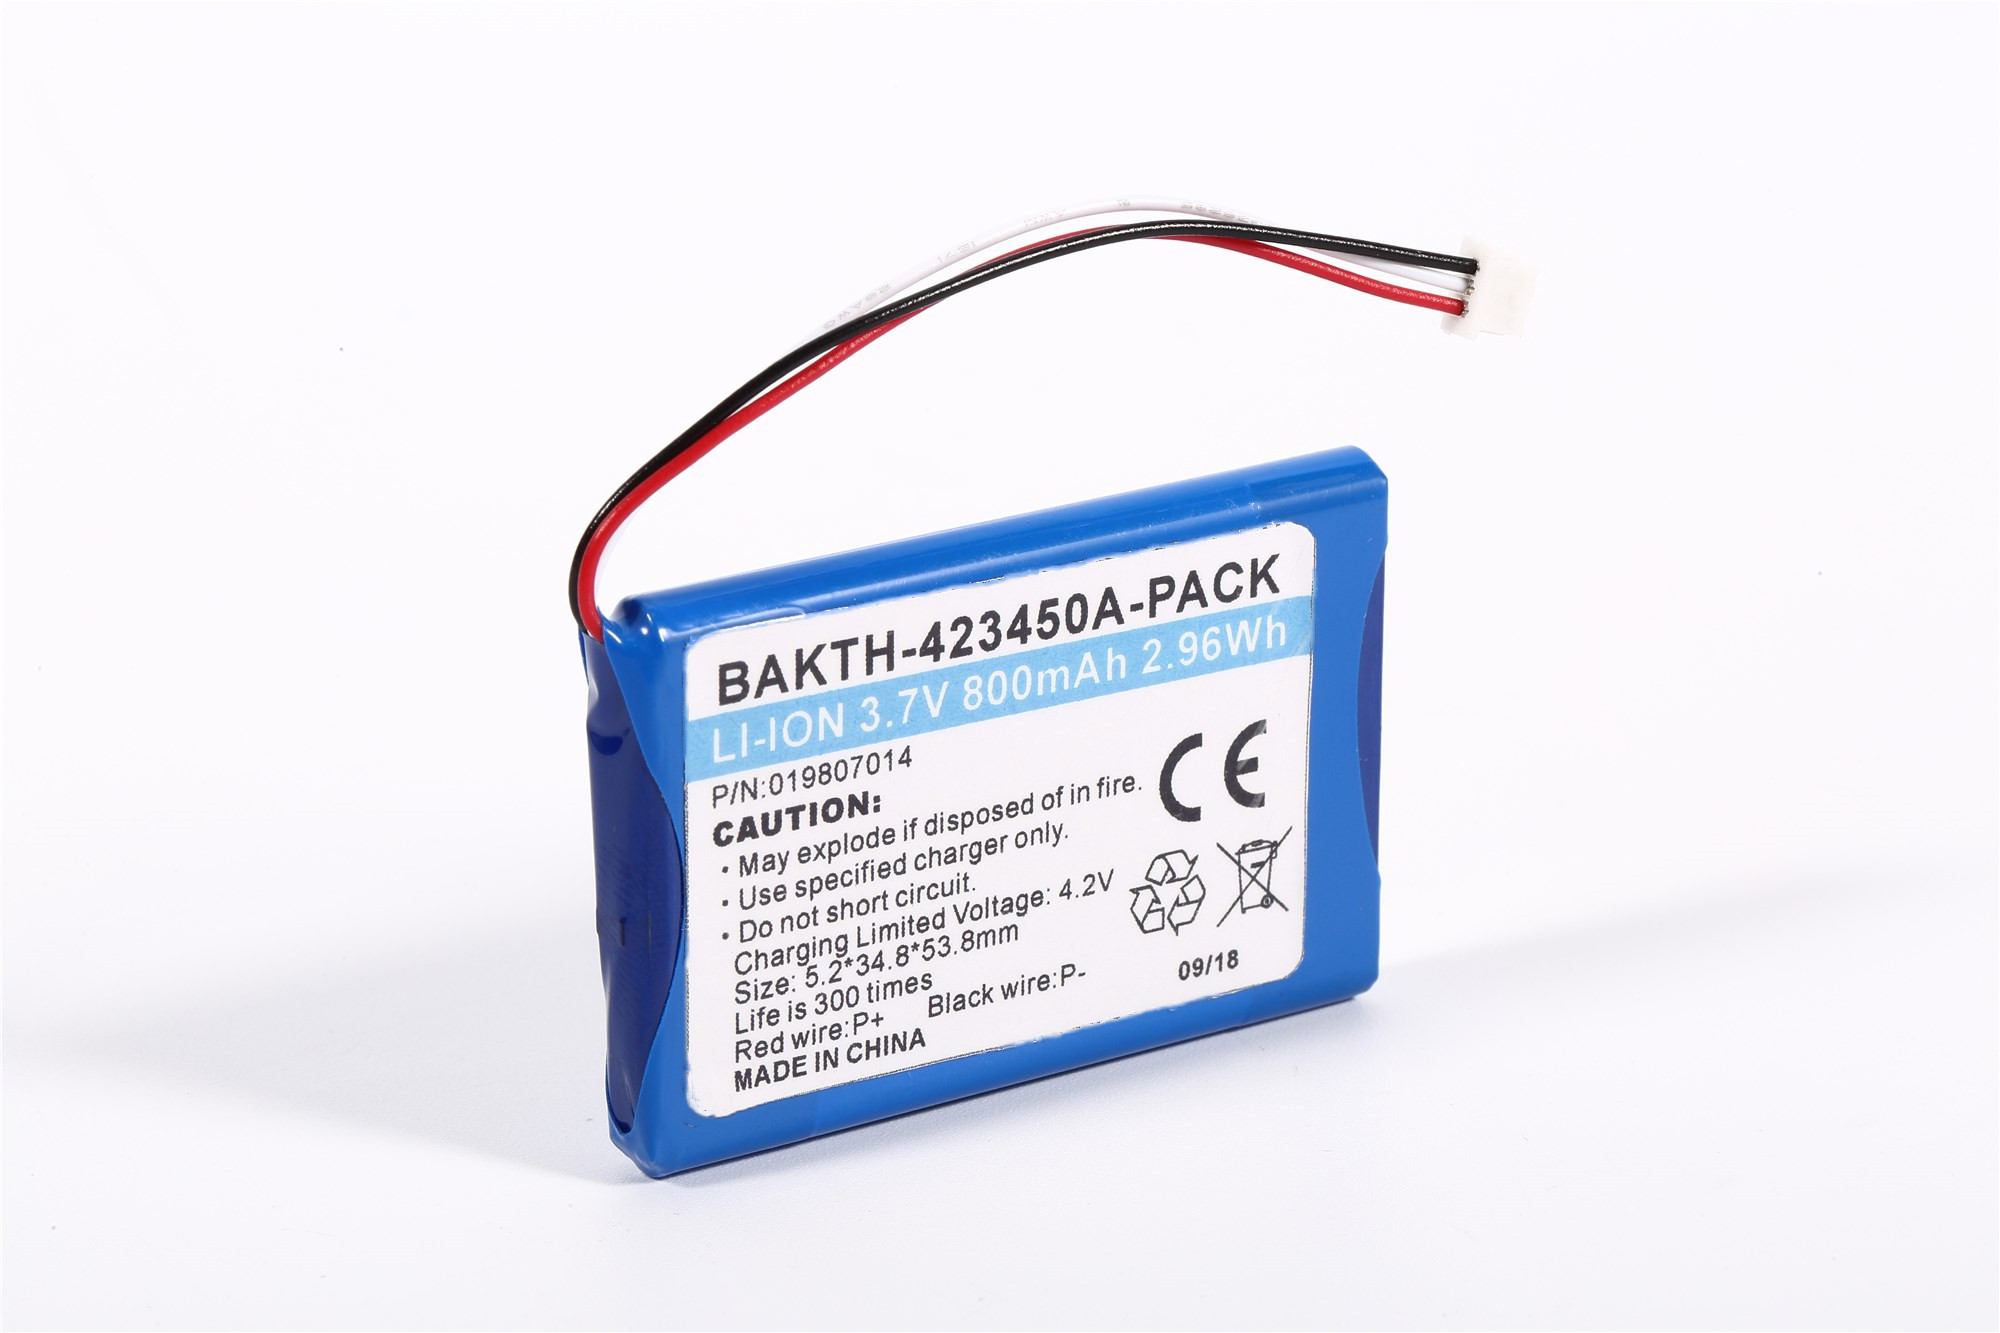 Paquete de baterías de iones de litio Bakth-423450-Pack 3.7V 800mAh 